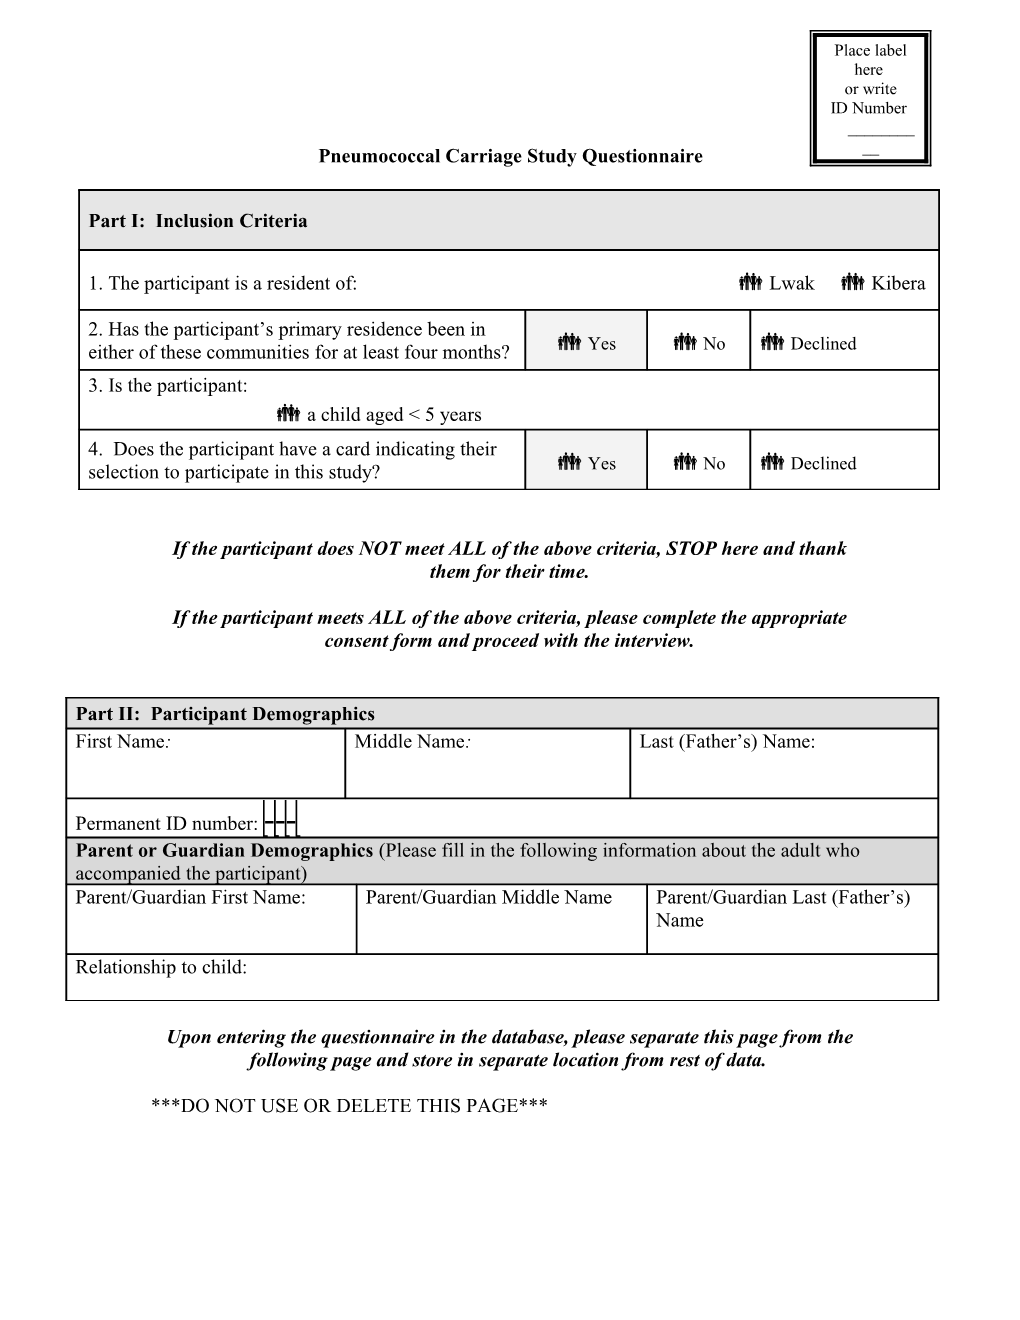 Appendix E: Pneumococcal Carriage Study Questionnaire